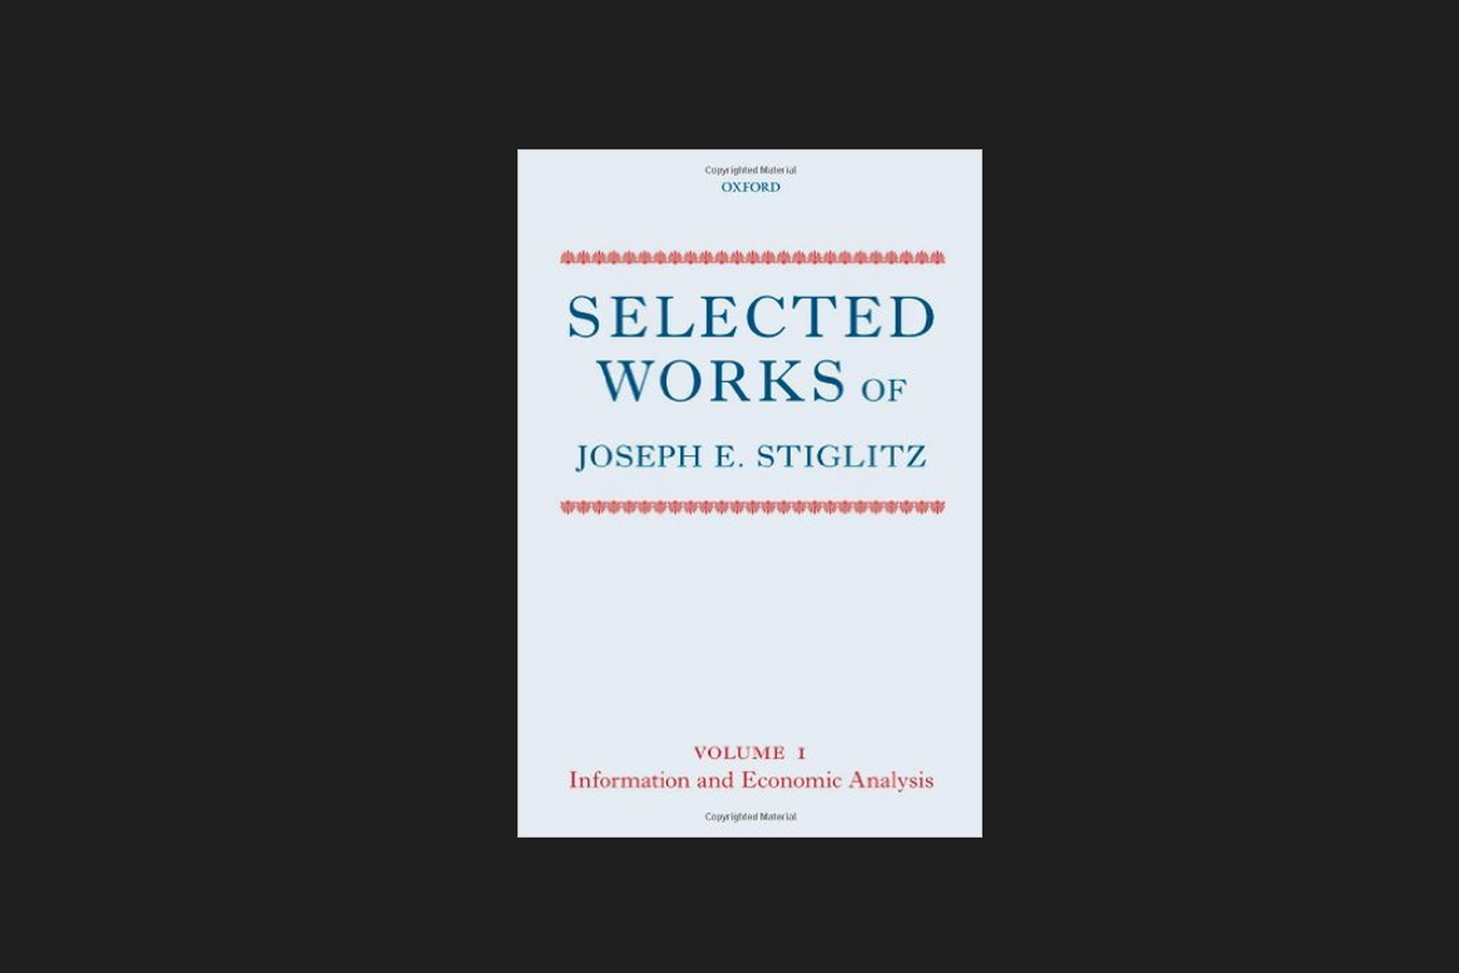 Book by Joseph E. Stiglitz